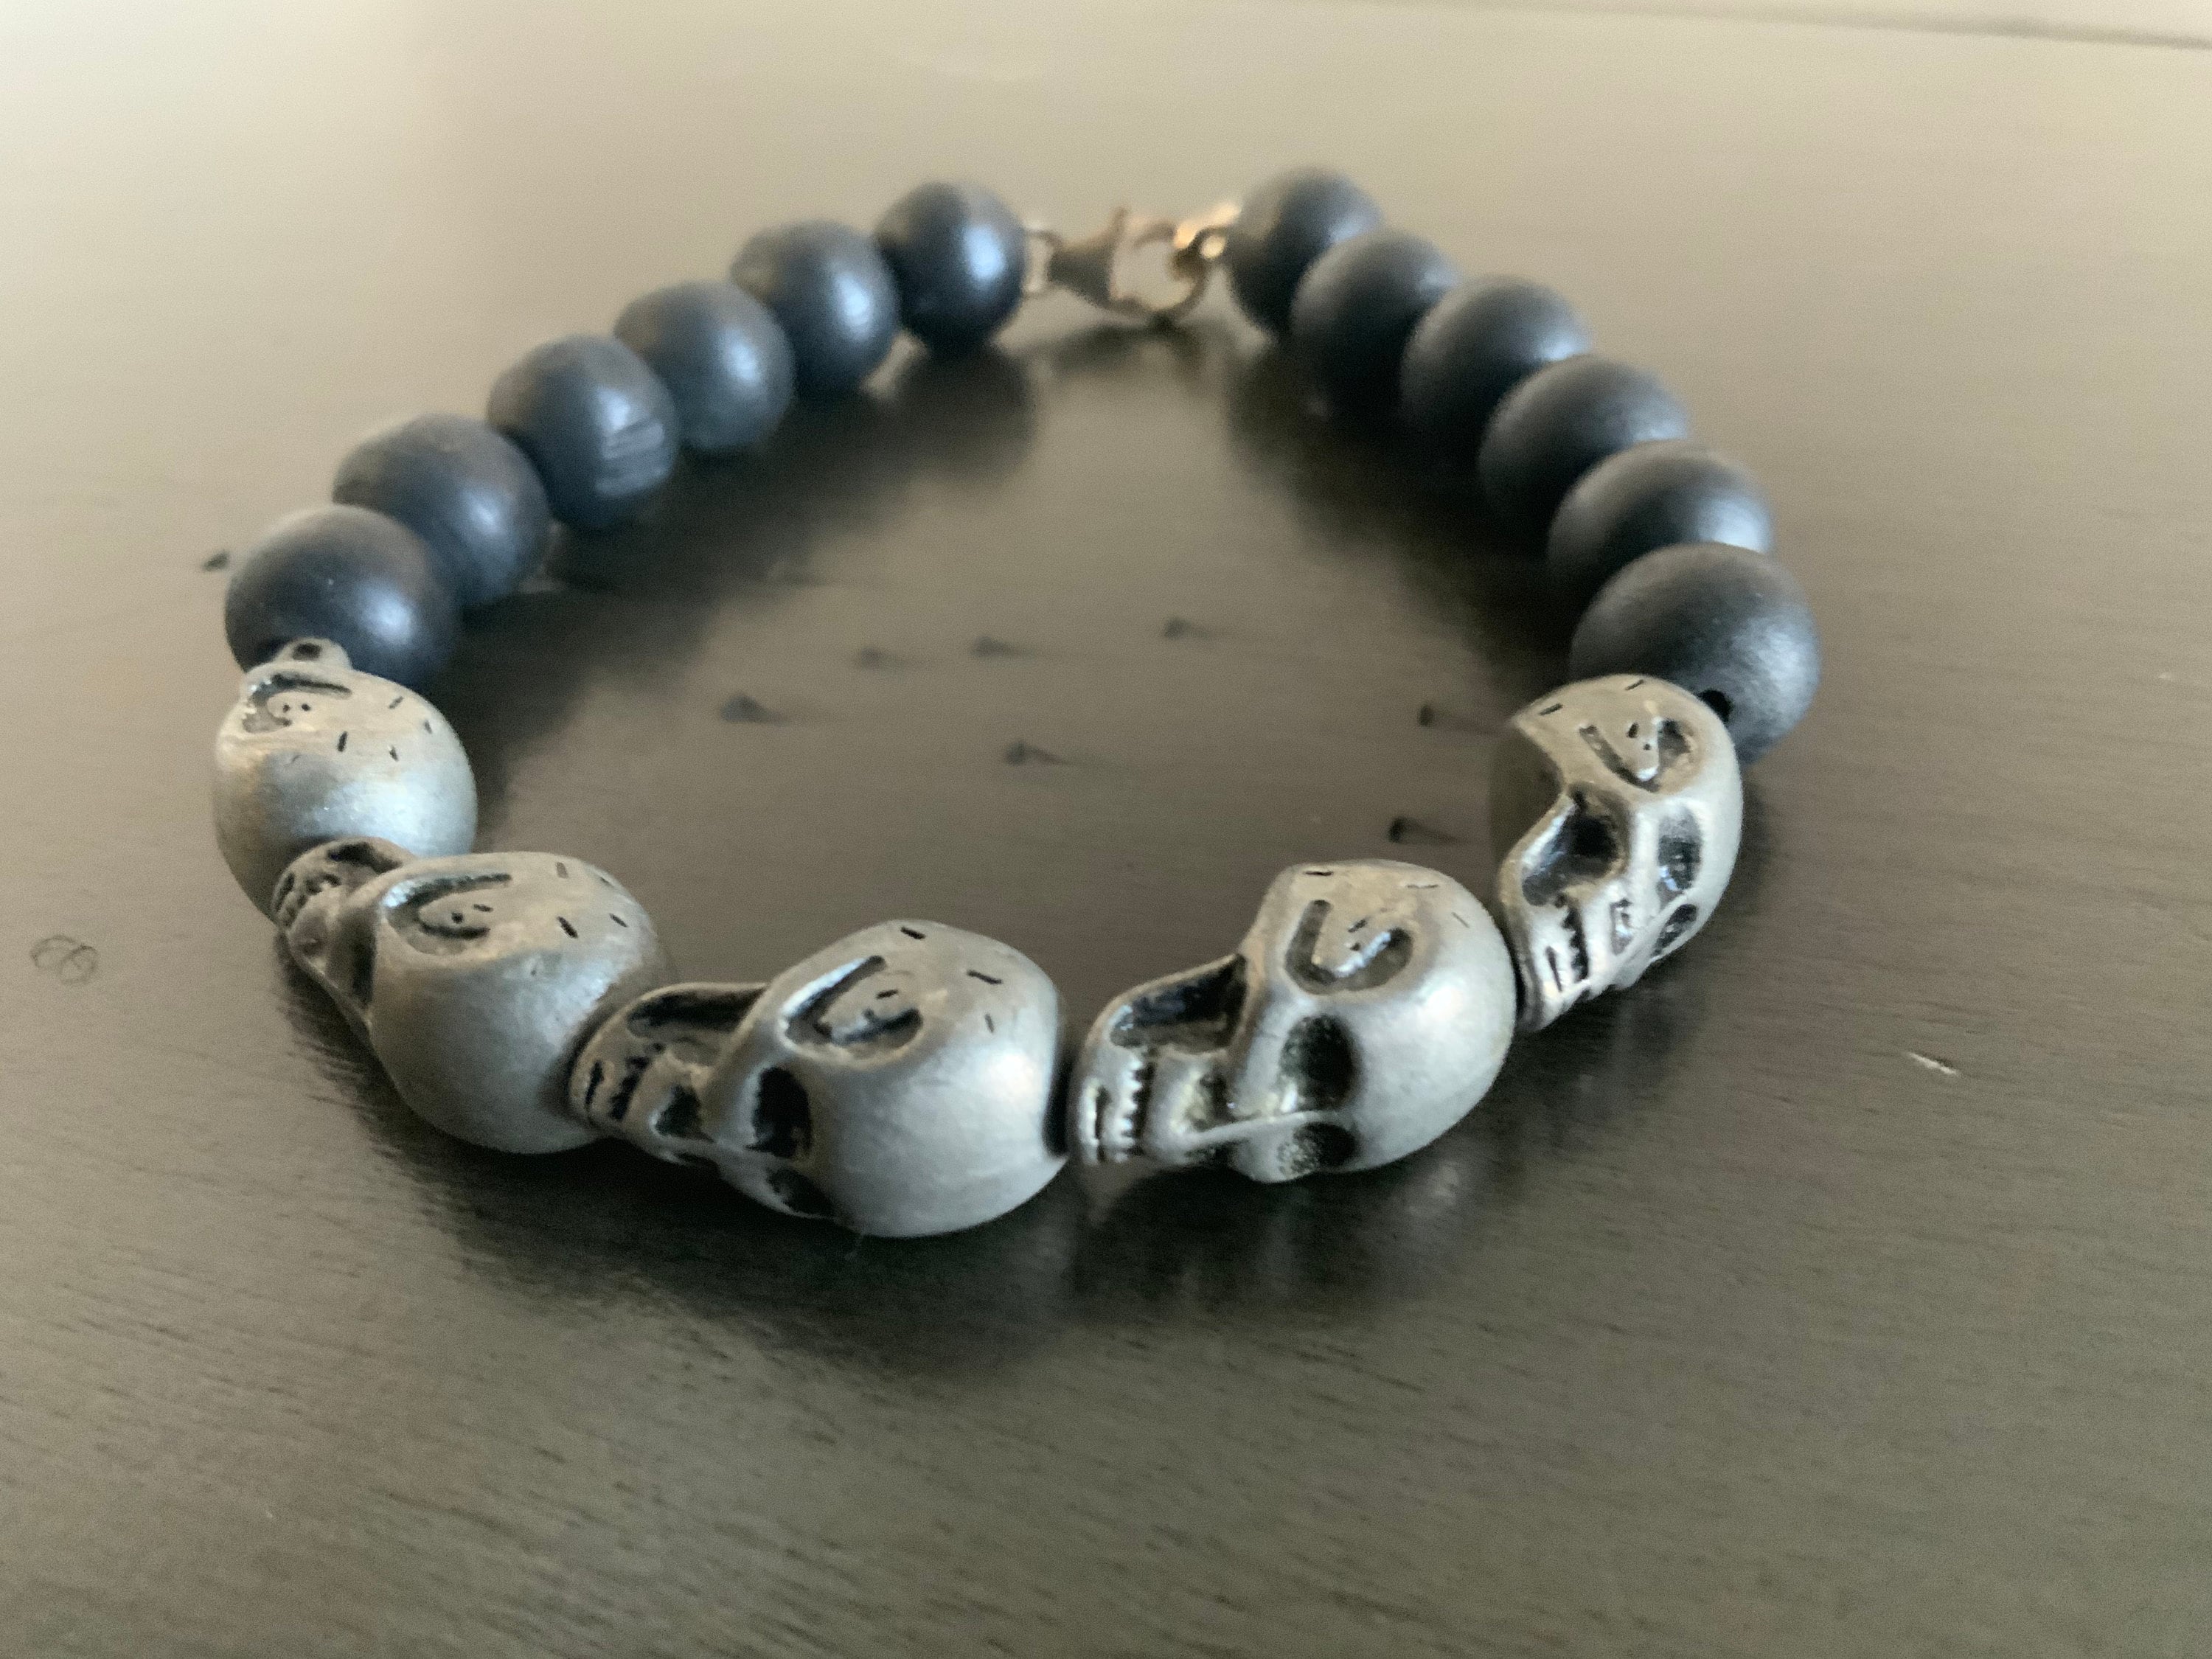 making bracelet CBR beads for bracelet Bracelet Charms mens bracelet Bracelet beads Antique Bronze Horned Helmet Beads Skull Charms